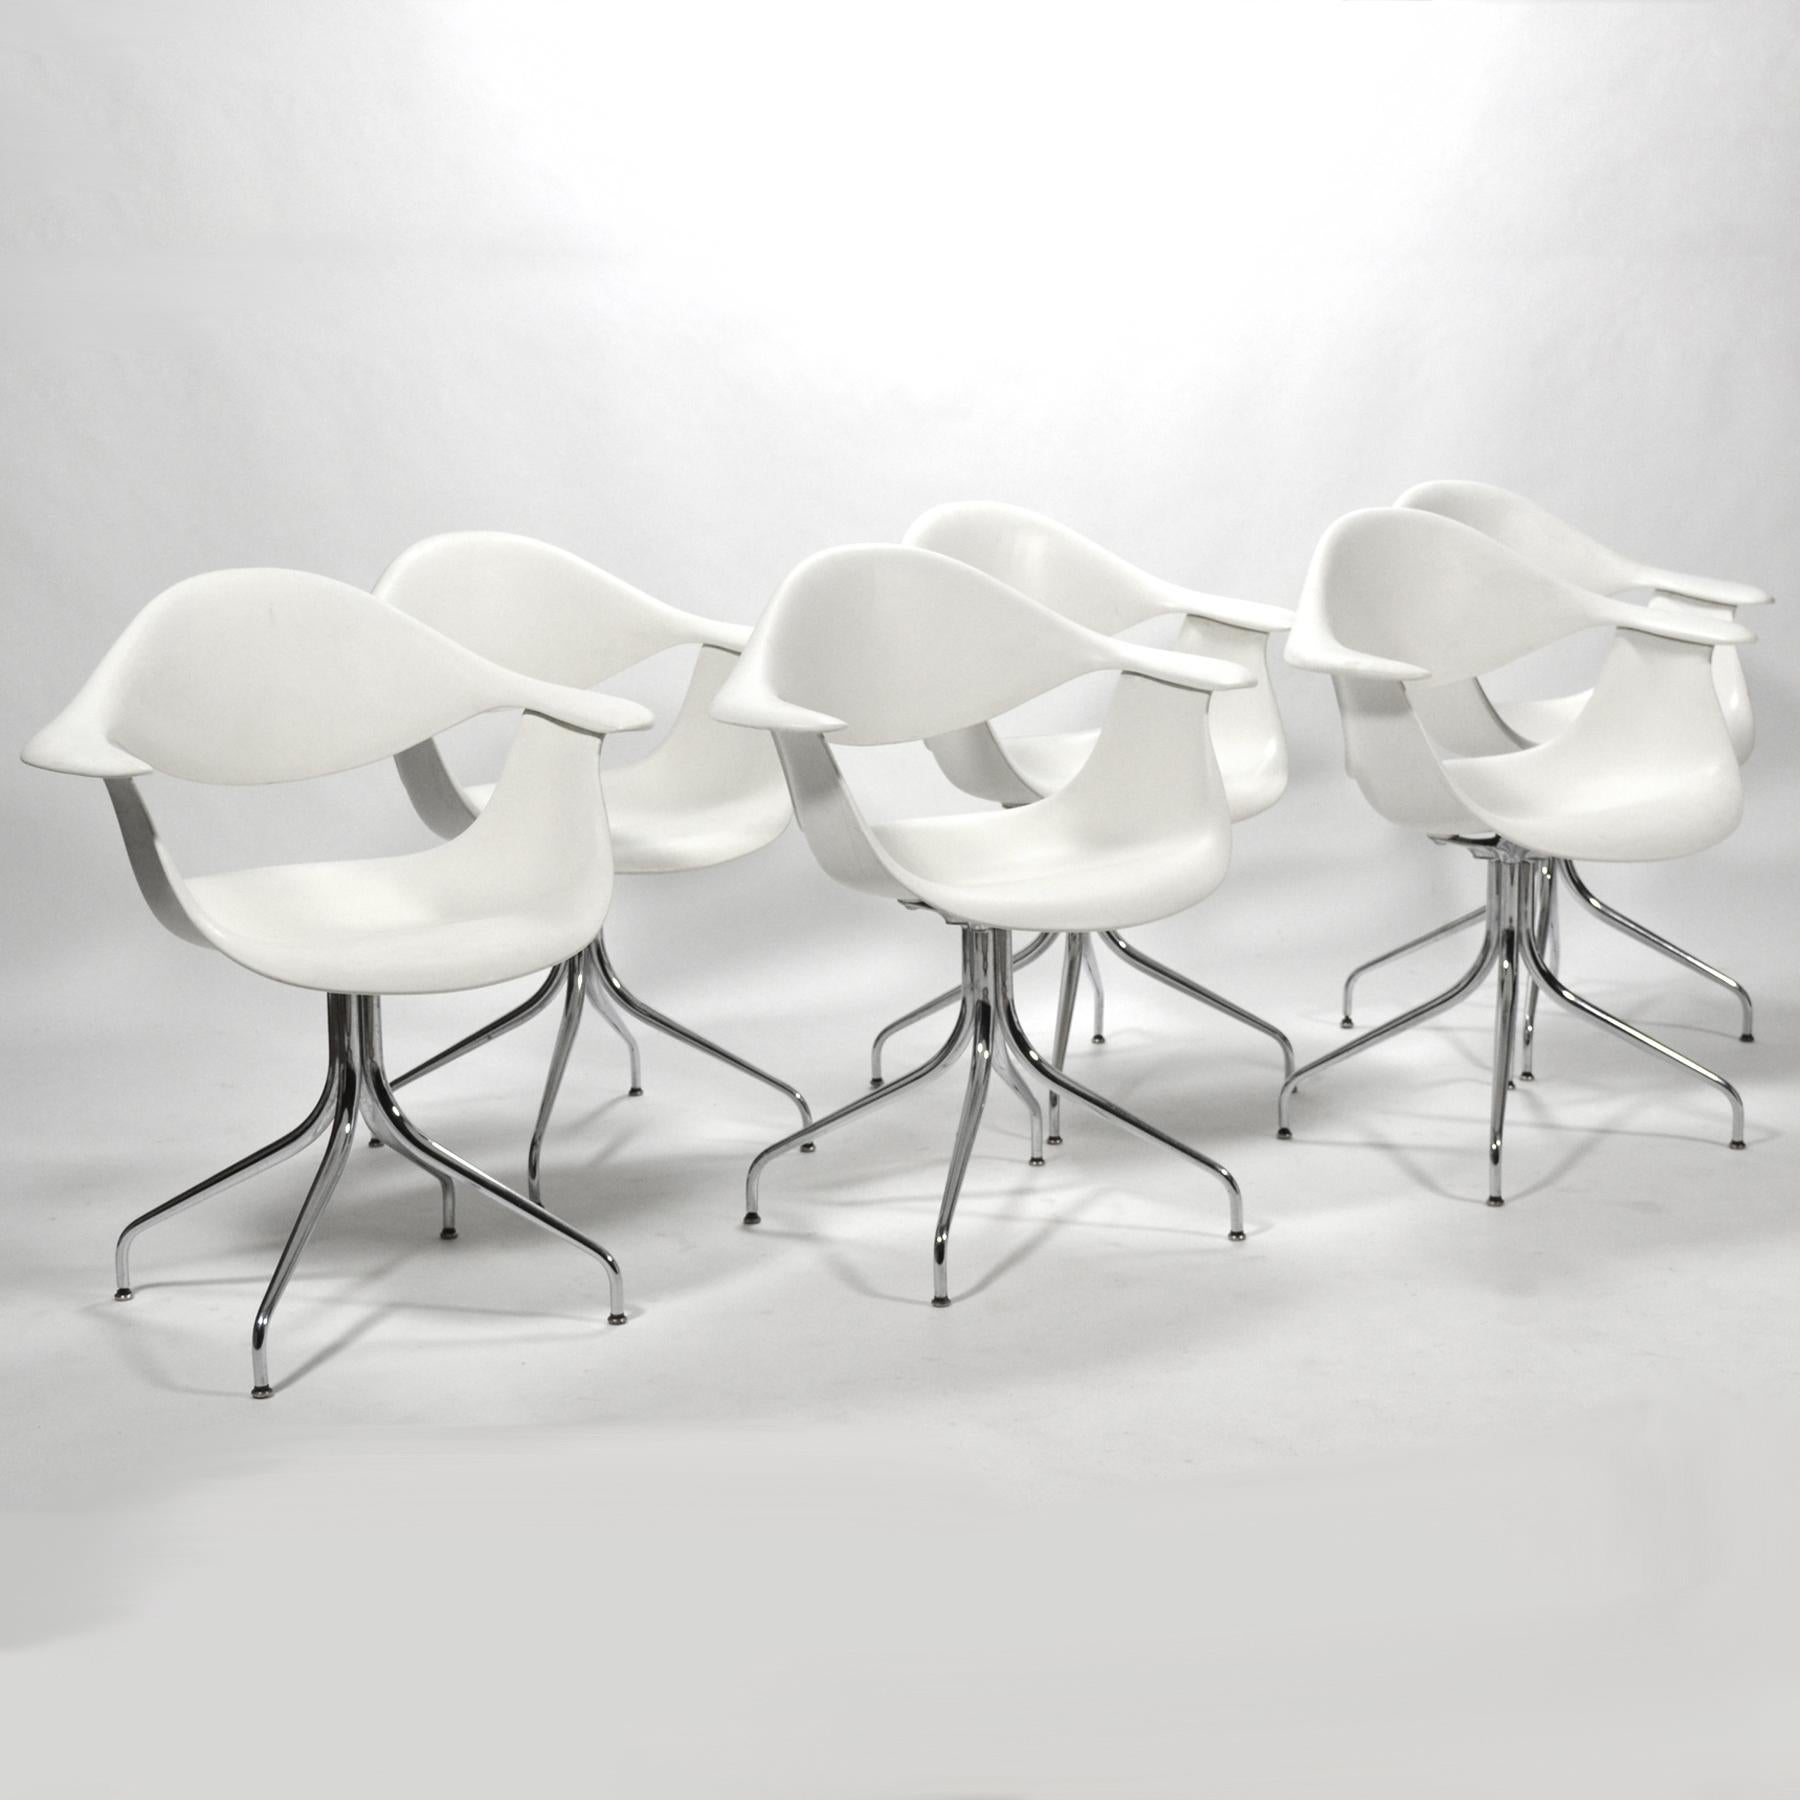 Die von George Nelson entworfenen Swag-Leg-Stühle wurden als Antwort auf seinen Wunsch entwickelt, einen Stuhl mit einem schönen 